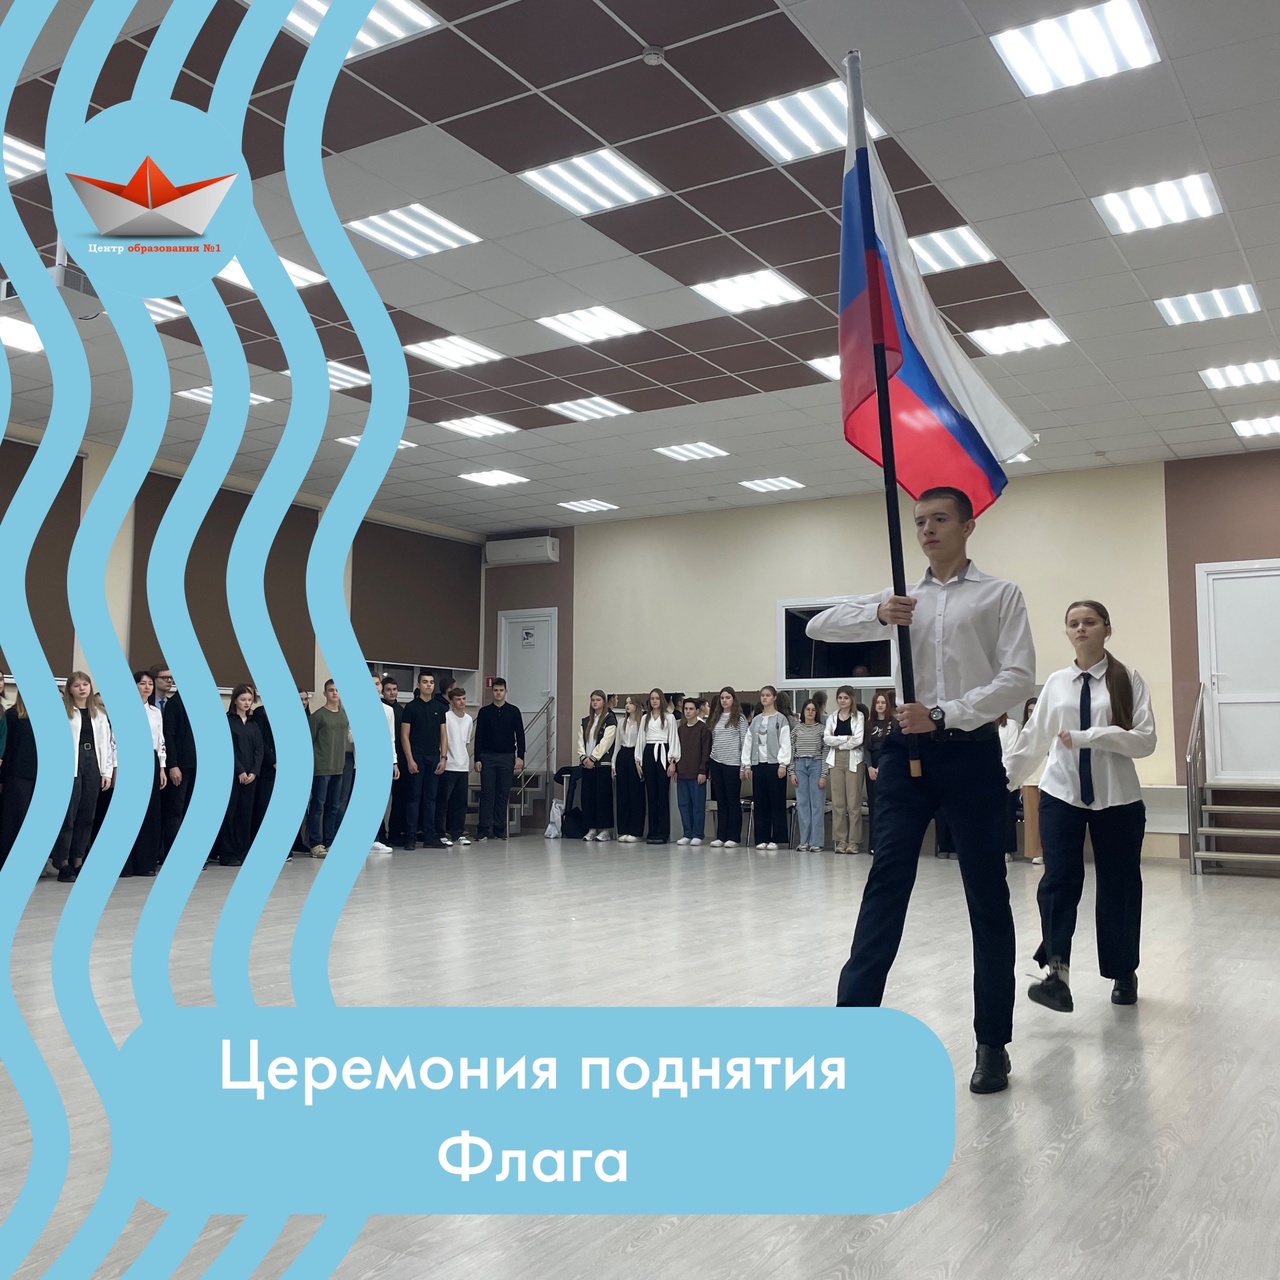 Новая учебная неделя началась с торжественной церемонии поднятия Флага Российской Федерации и разговоров о важном на тему «Герои нашего времени».